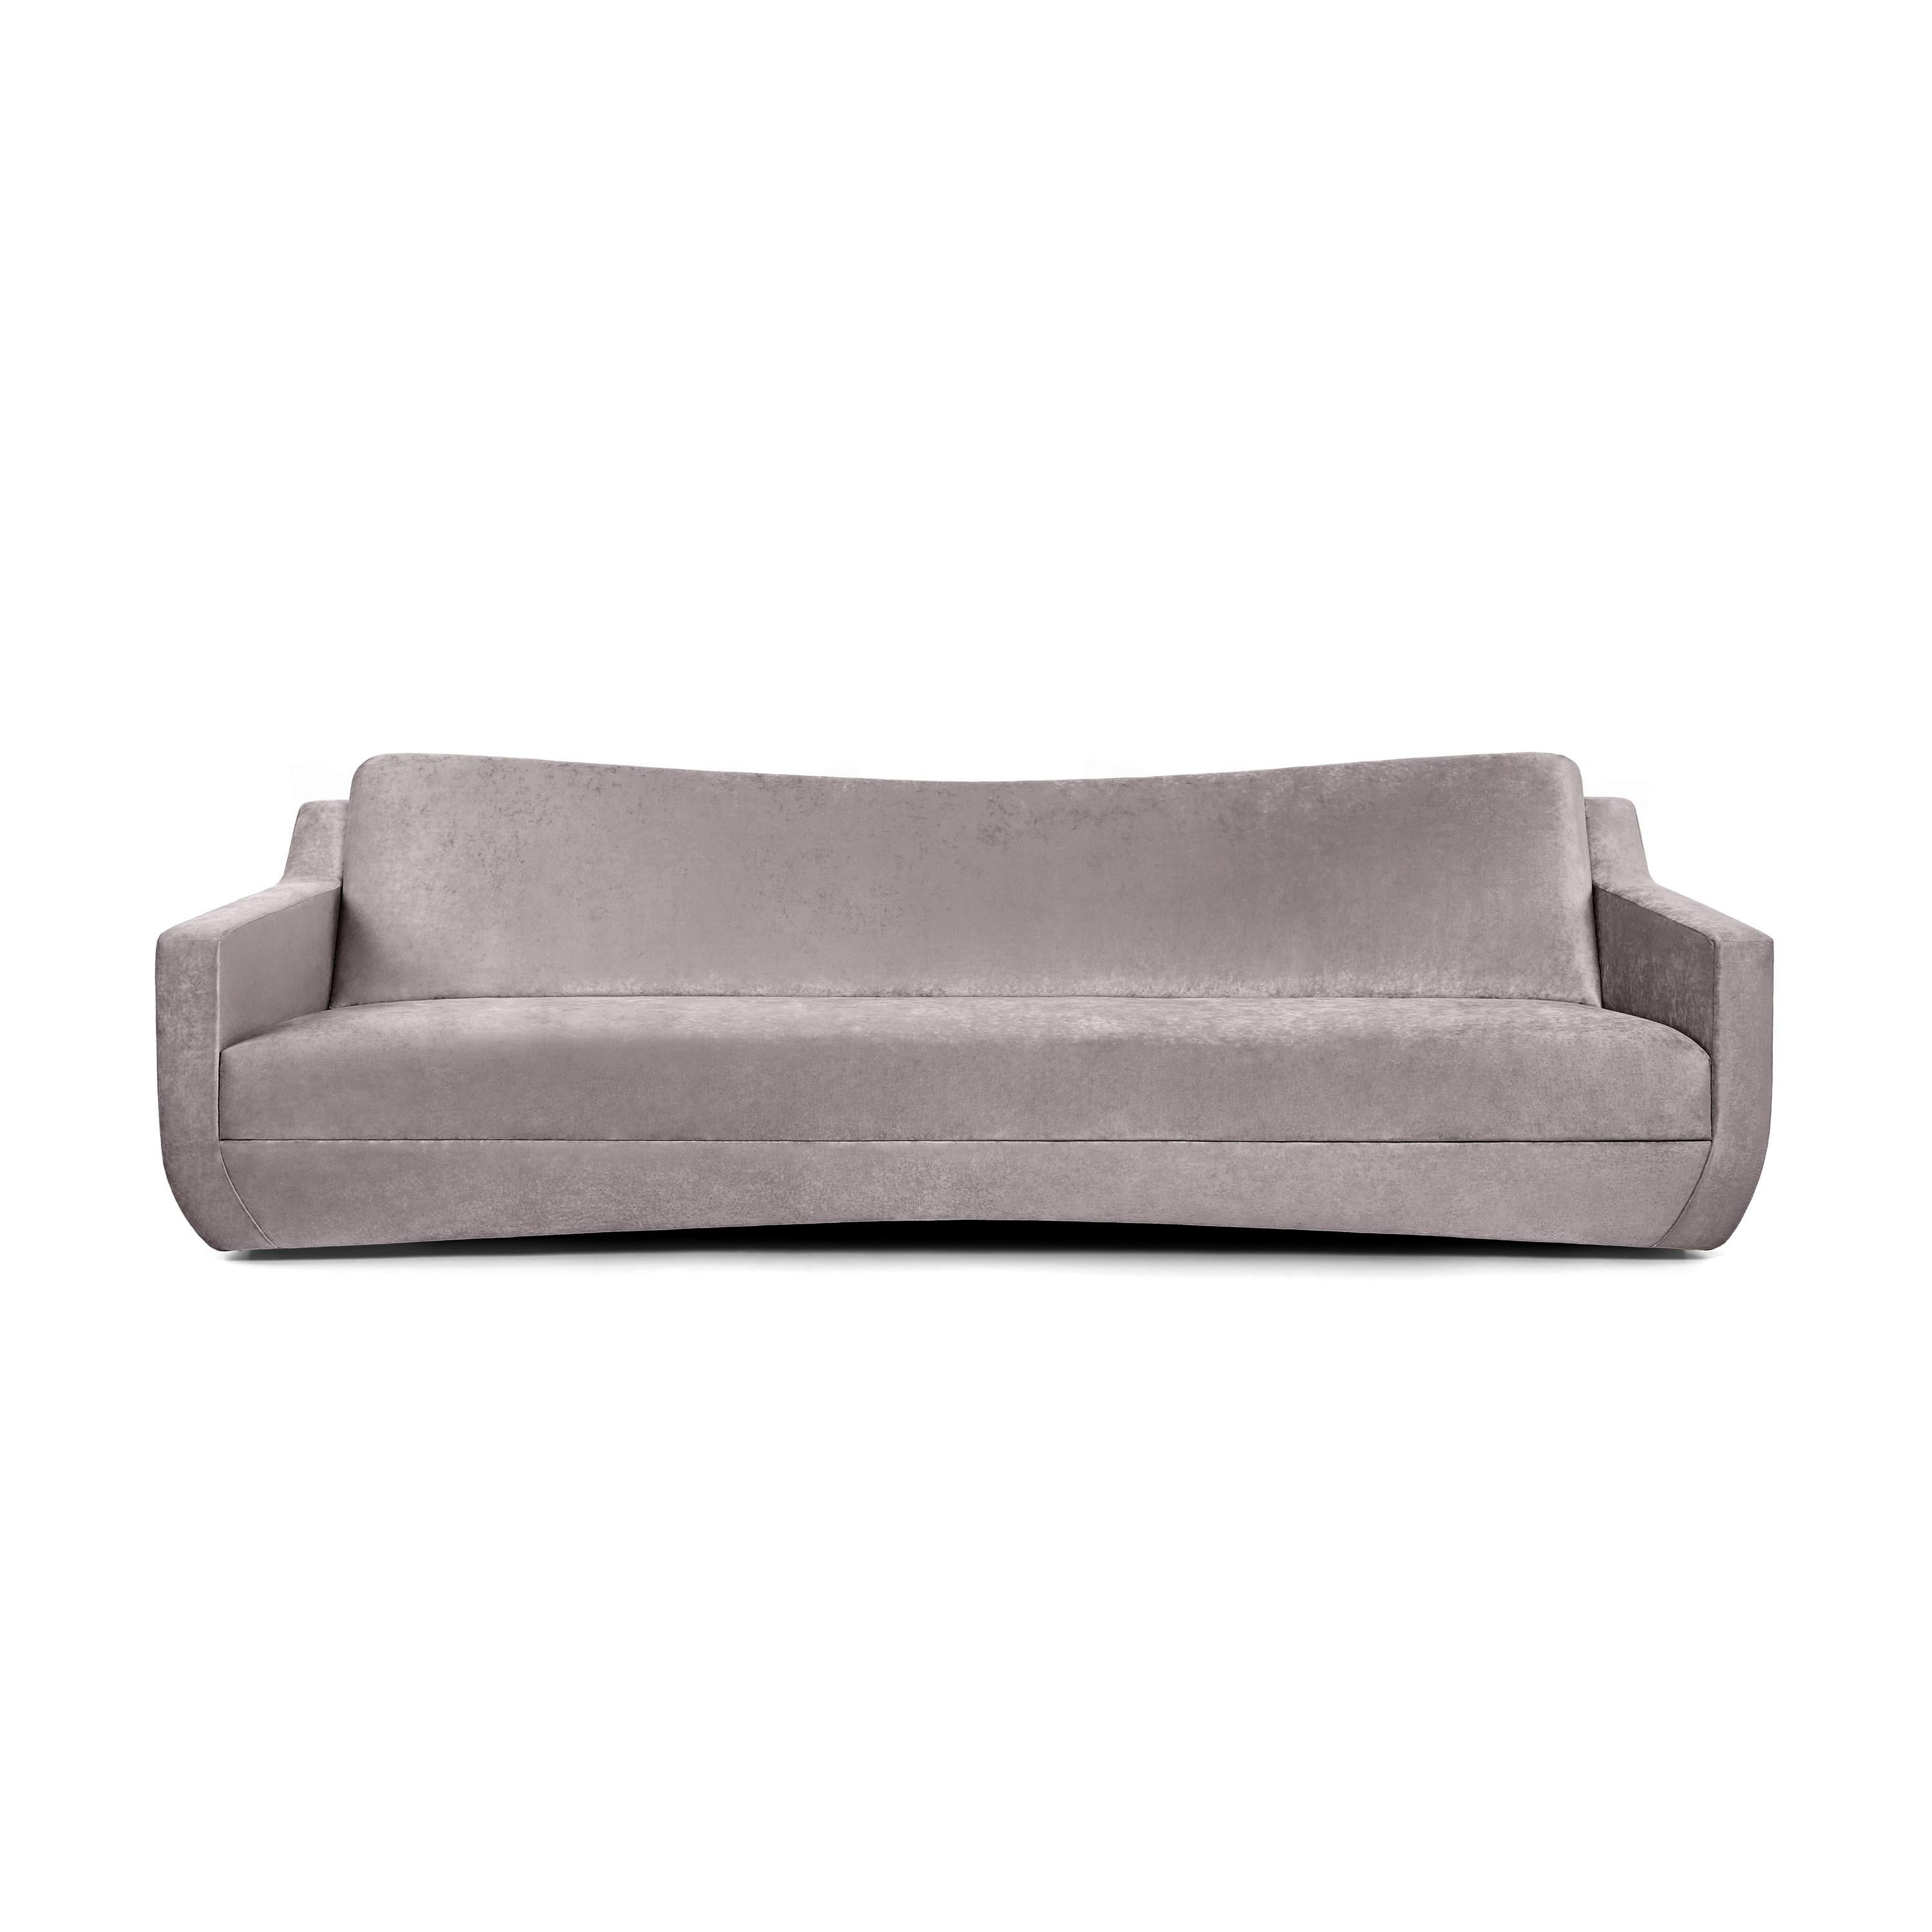 Dieses Sofa besticht durch sein klares und fesselndes Design und bietet ein mühelos cooles Finish.
Die schwungvolle Rückenlehne unterstreicht das integrierte Sitzkissen, das durch eine dezente Naht ergänzt wird, um das makellose Aussehen zu